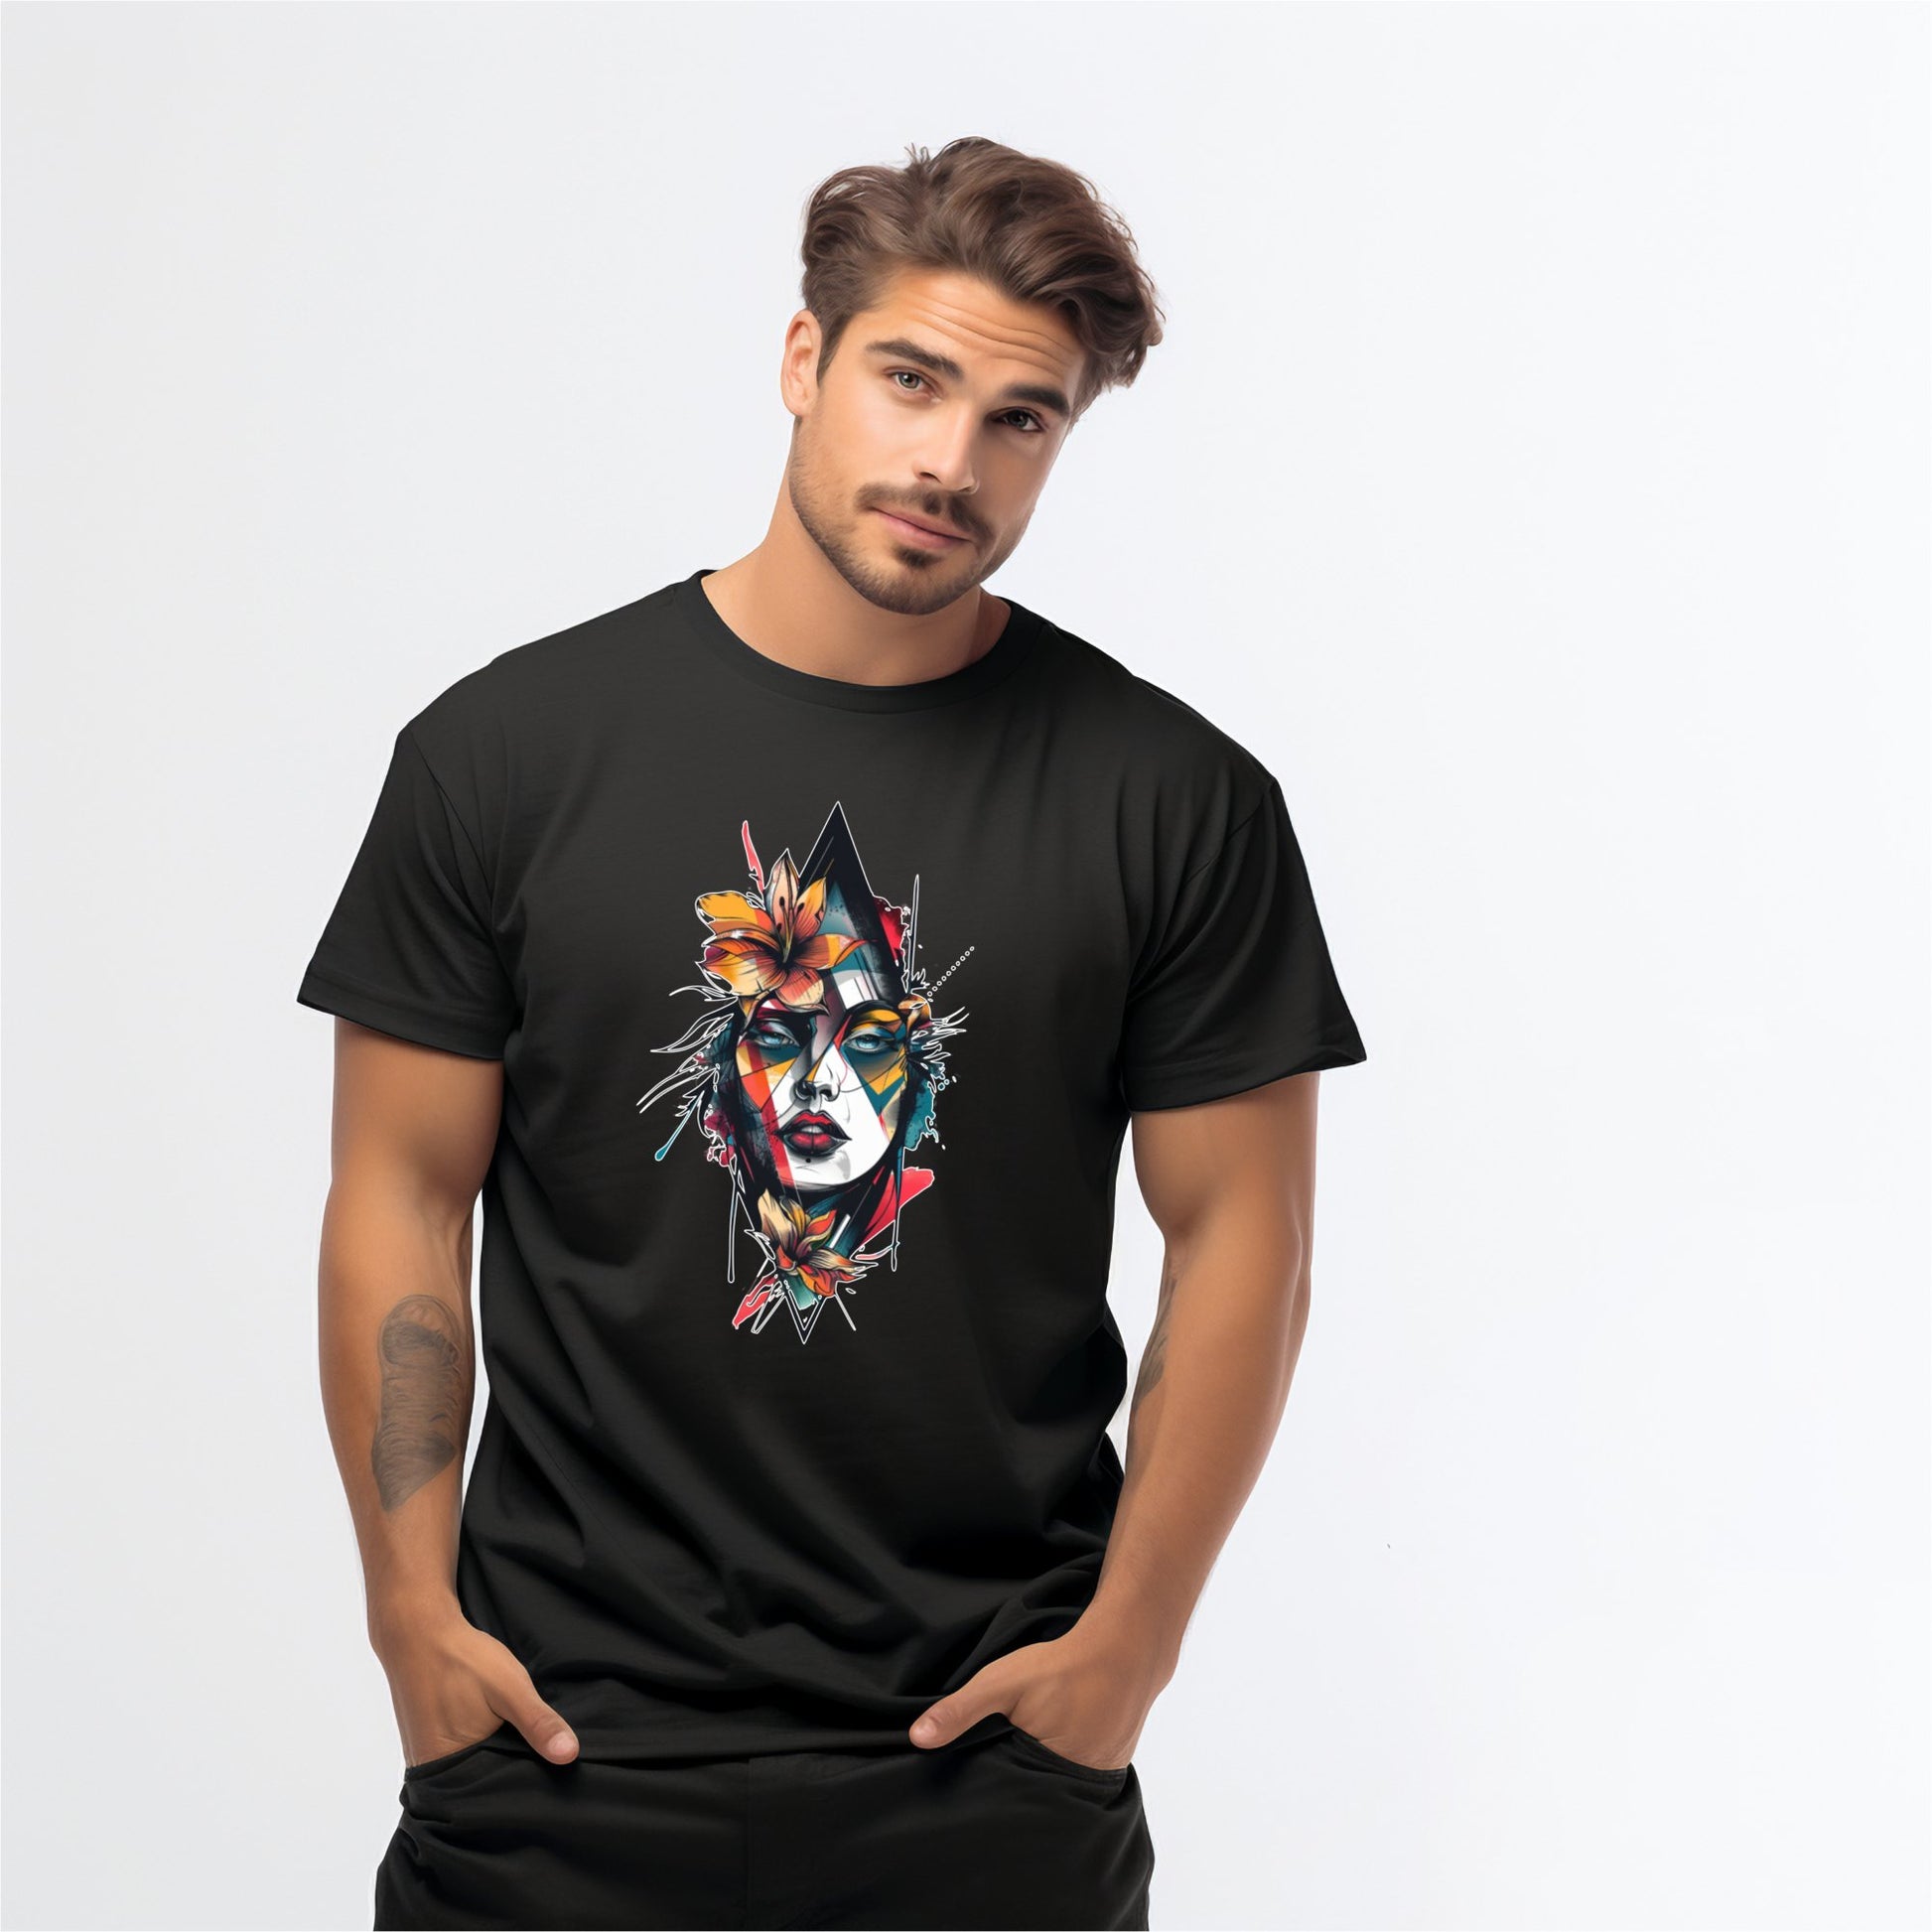 Vyriškas marškinėlis "Artistic Soul" juodos spalvos, su spalvingu ir kūrybišku meniniu veido piešiniu, Designed By Me kolekcija, Vyriški marškinėliai,Visi produktai,☀️ Vasaros kolekcija ☀️